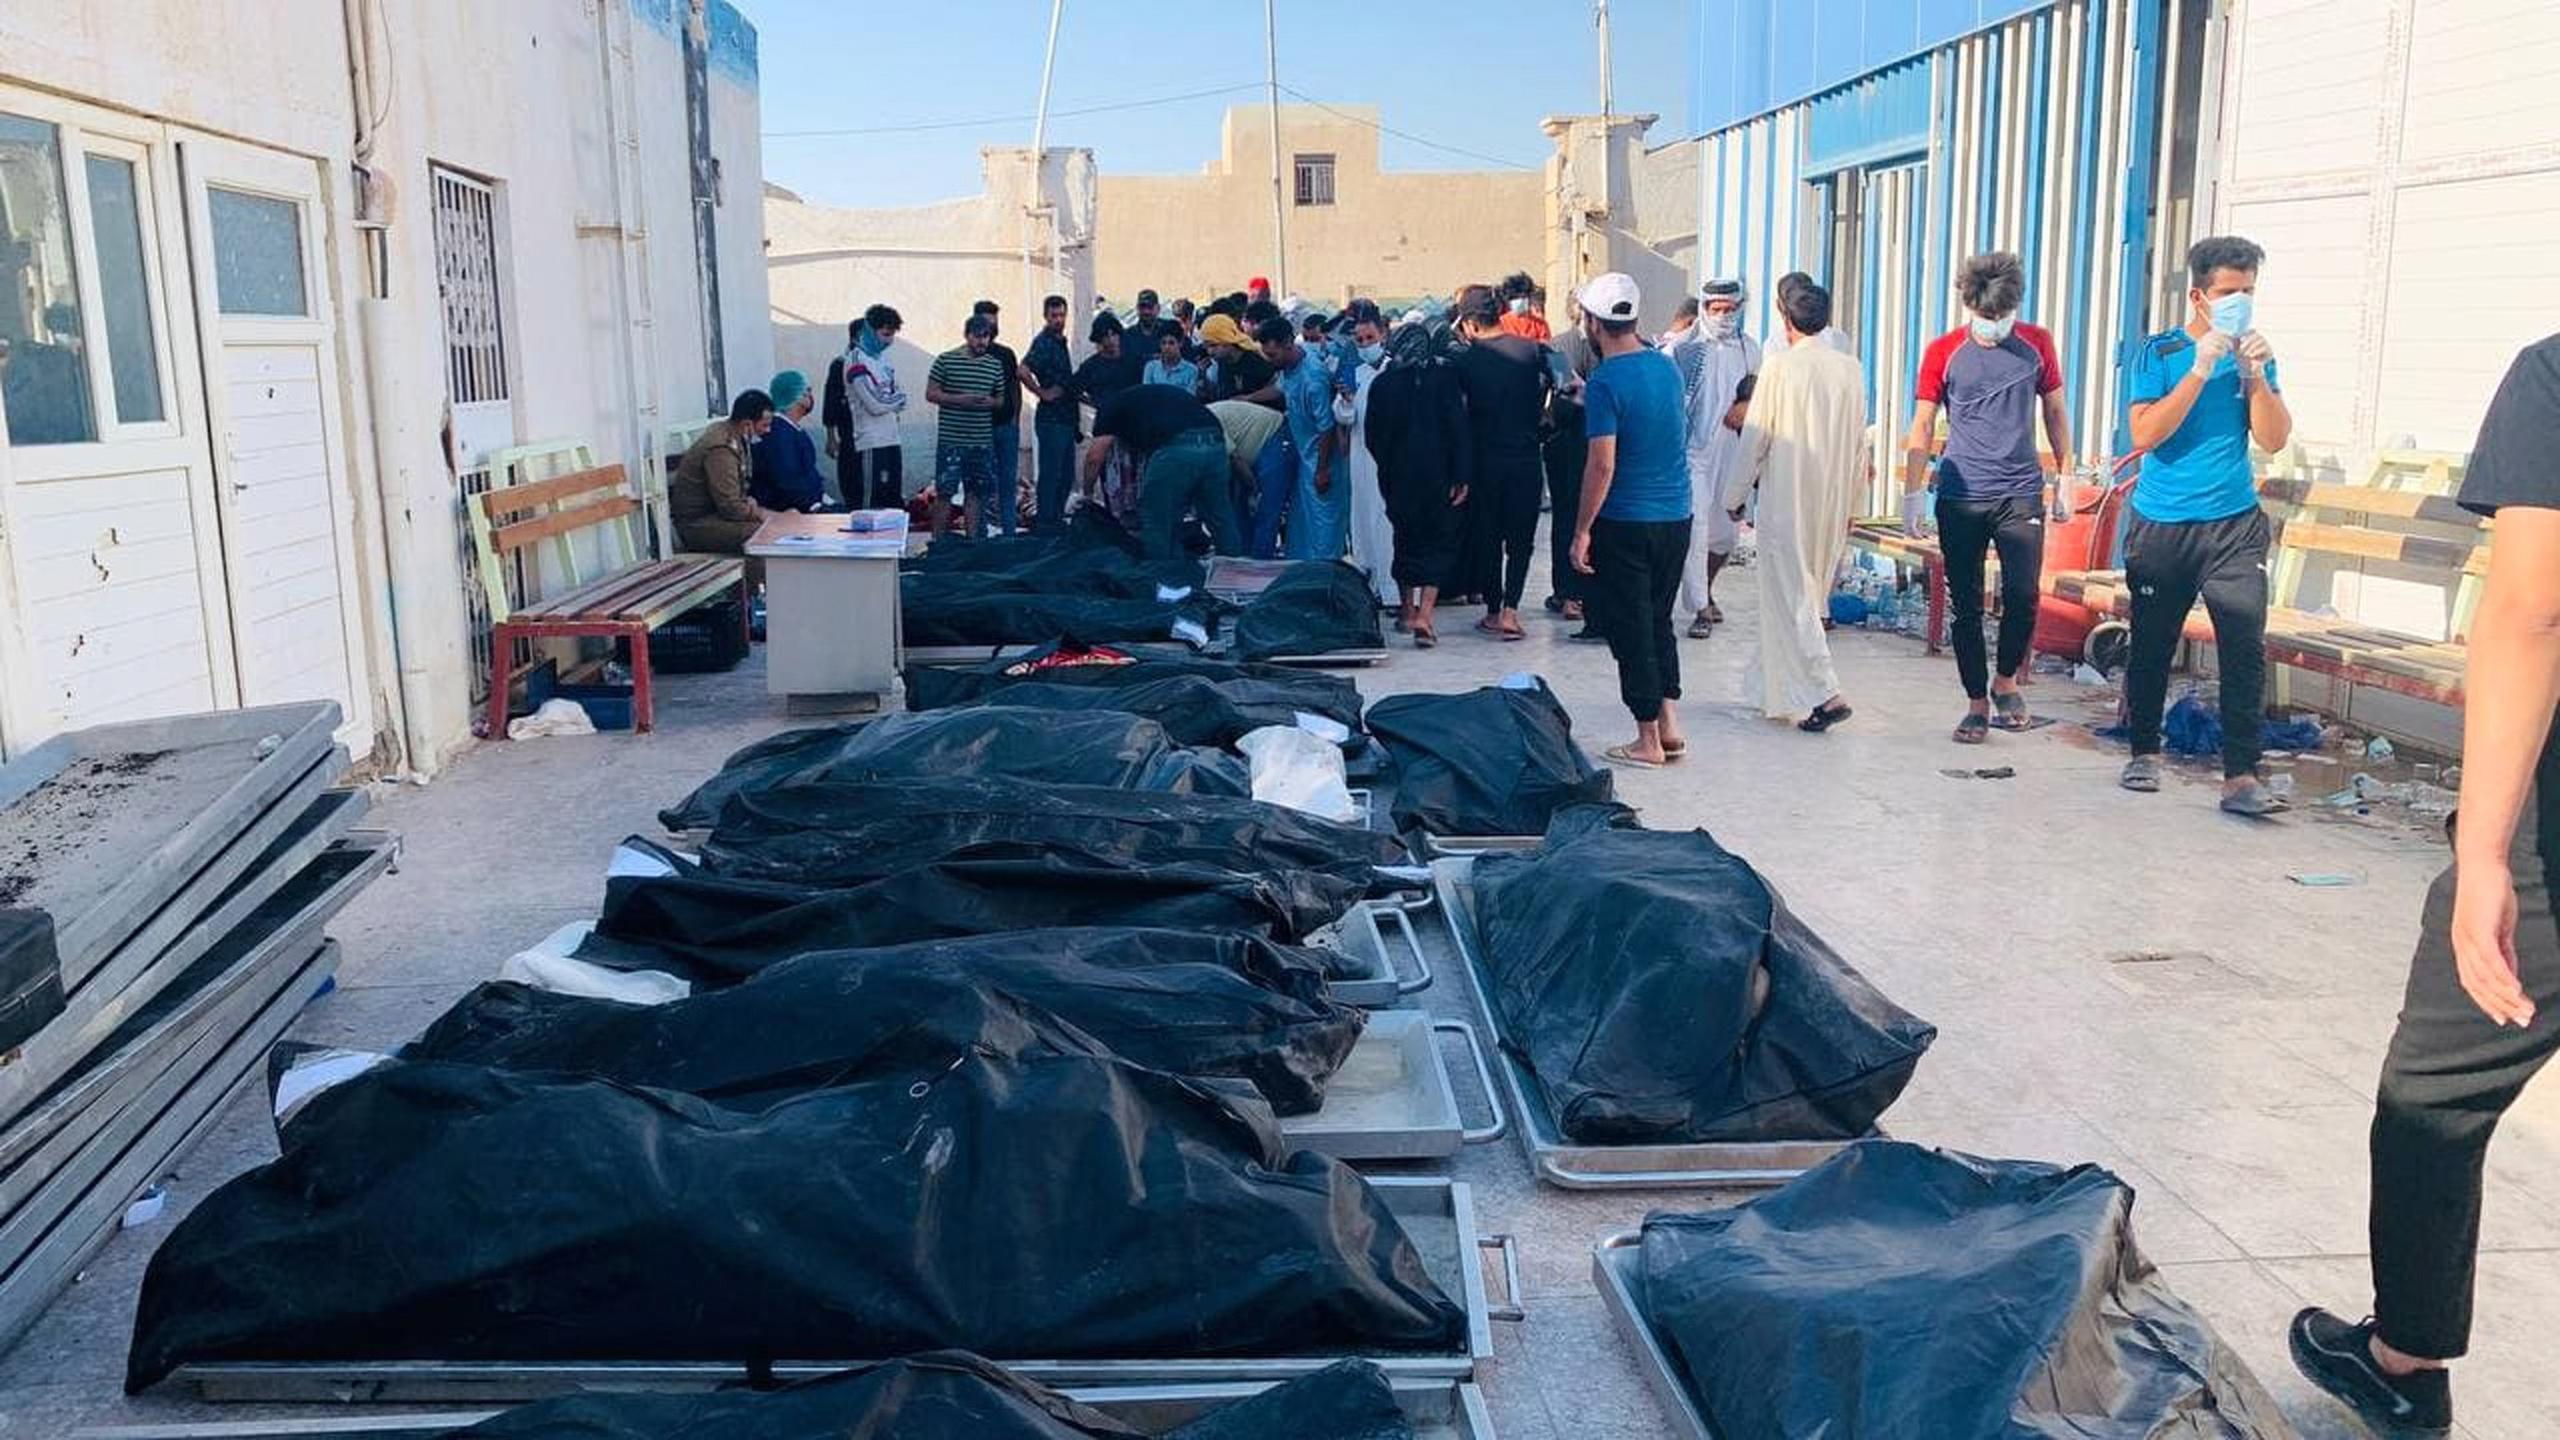 Esta fue la segunda vez que un gran incendio mata a pacientes de COVID-19 en un hospital iraquí este año. En abril, al menos 82 personas fallecieron en el hospital Ibn al-Khatib de Bagdad tras la explosión de un tanque de oxígeno, que causó un incendio.